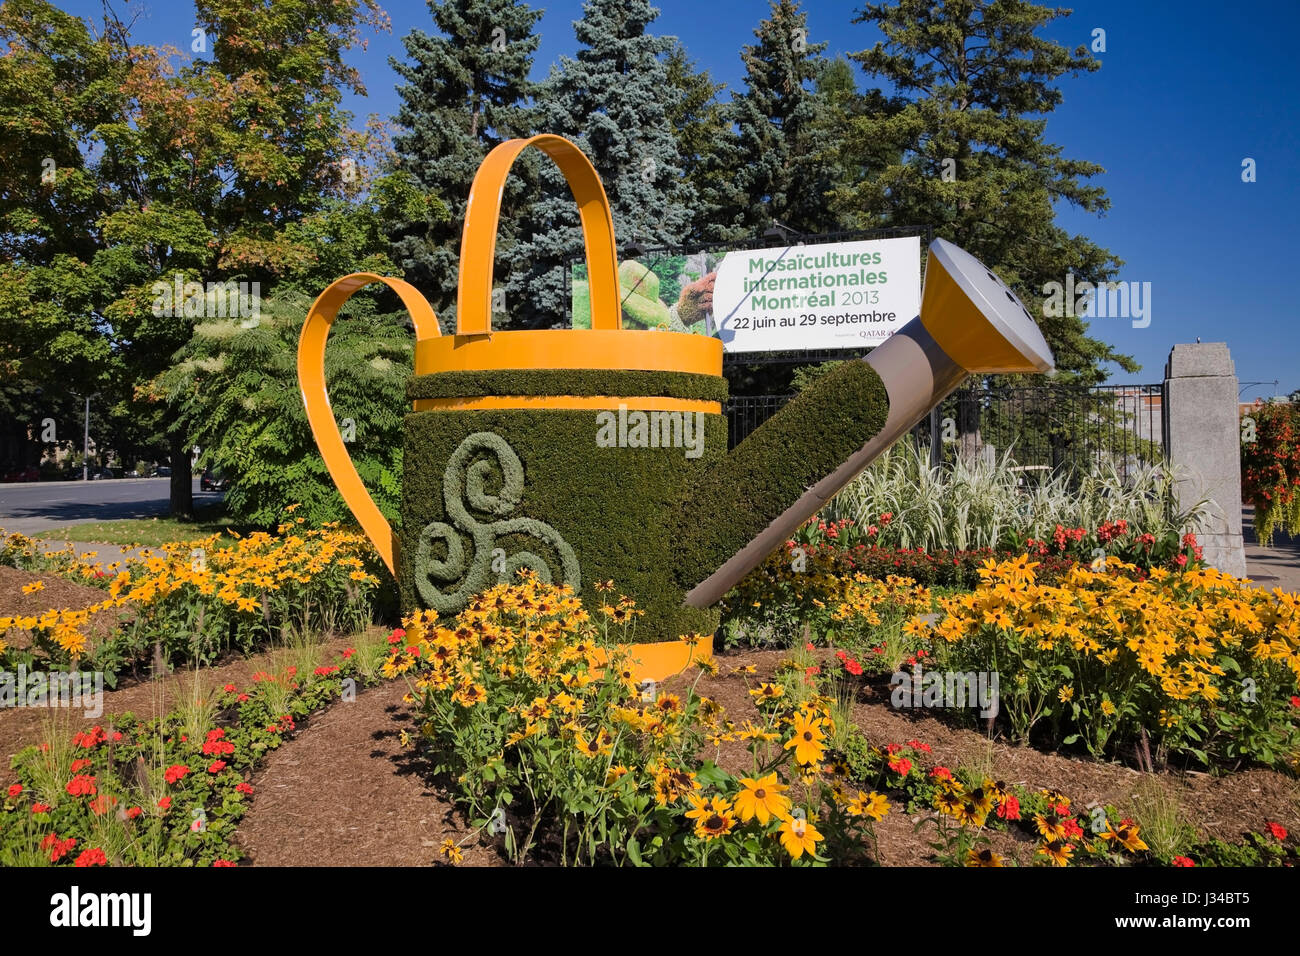 Sculpture de plantes vivantes d'un arrosoir peut créé sur métal formes en maille remplies de terre et plantées de diverses plantes et graminées Banque D'Images